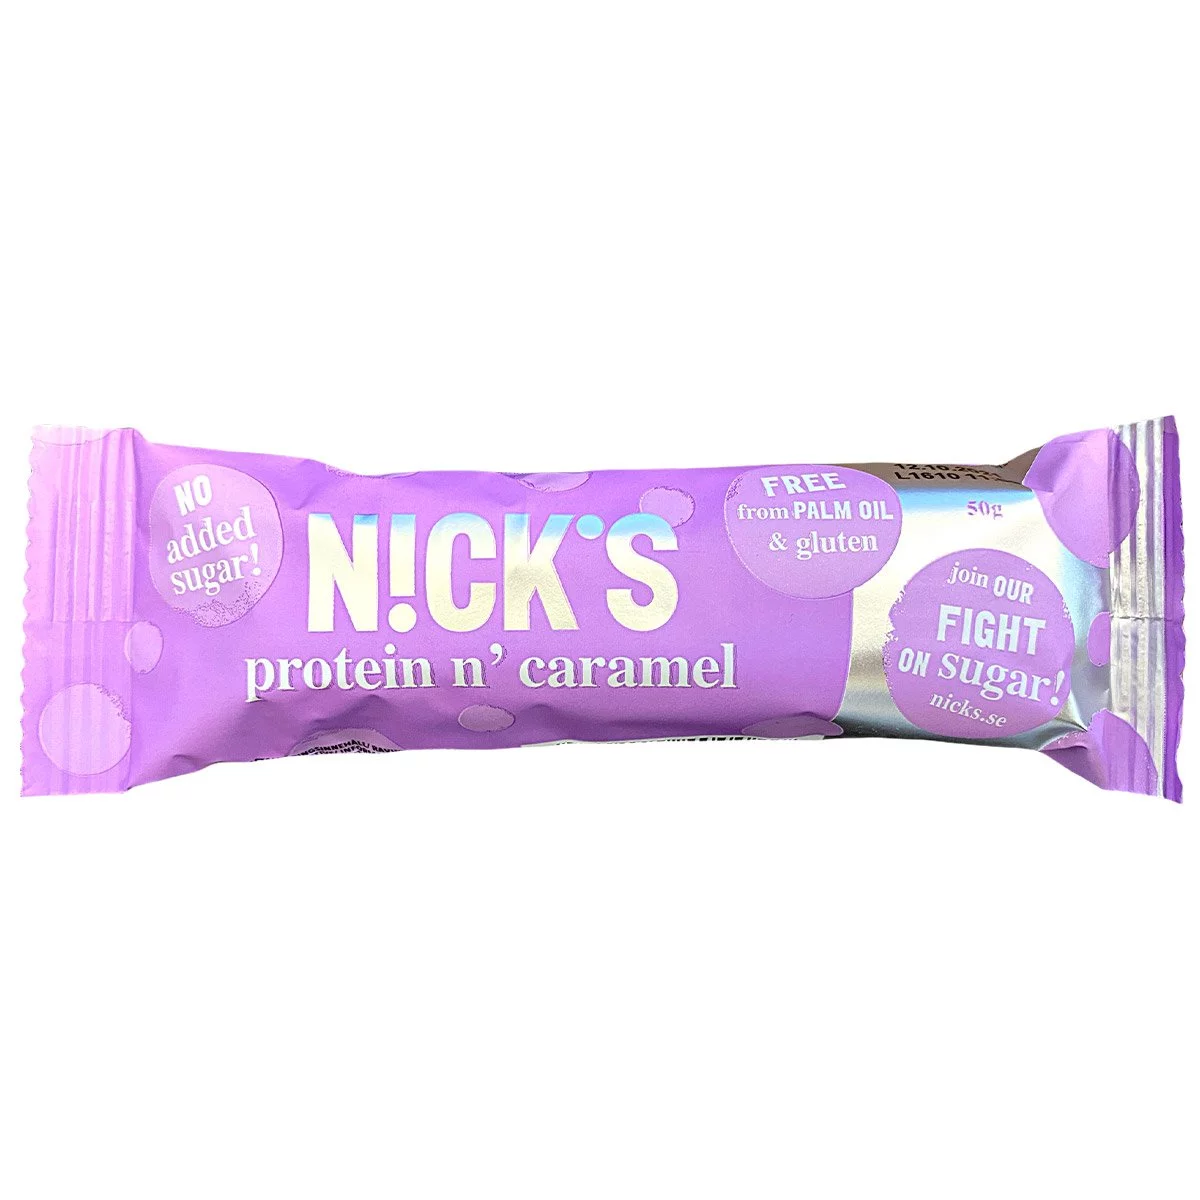 NICK'S protein caramel - Proteinriegel ohne Zuckerzusatz (50g) 1